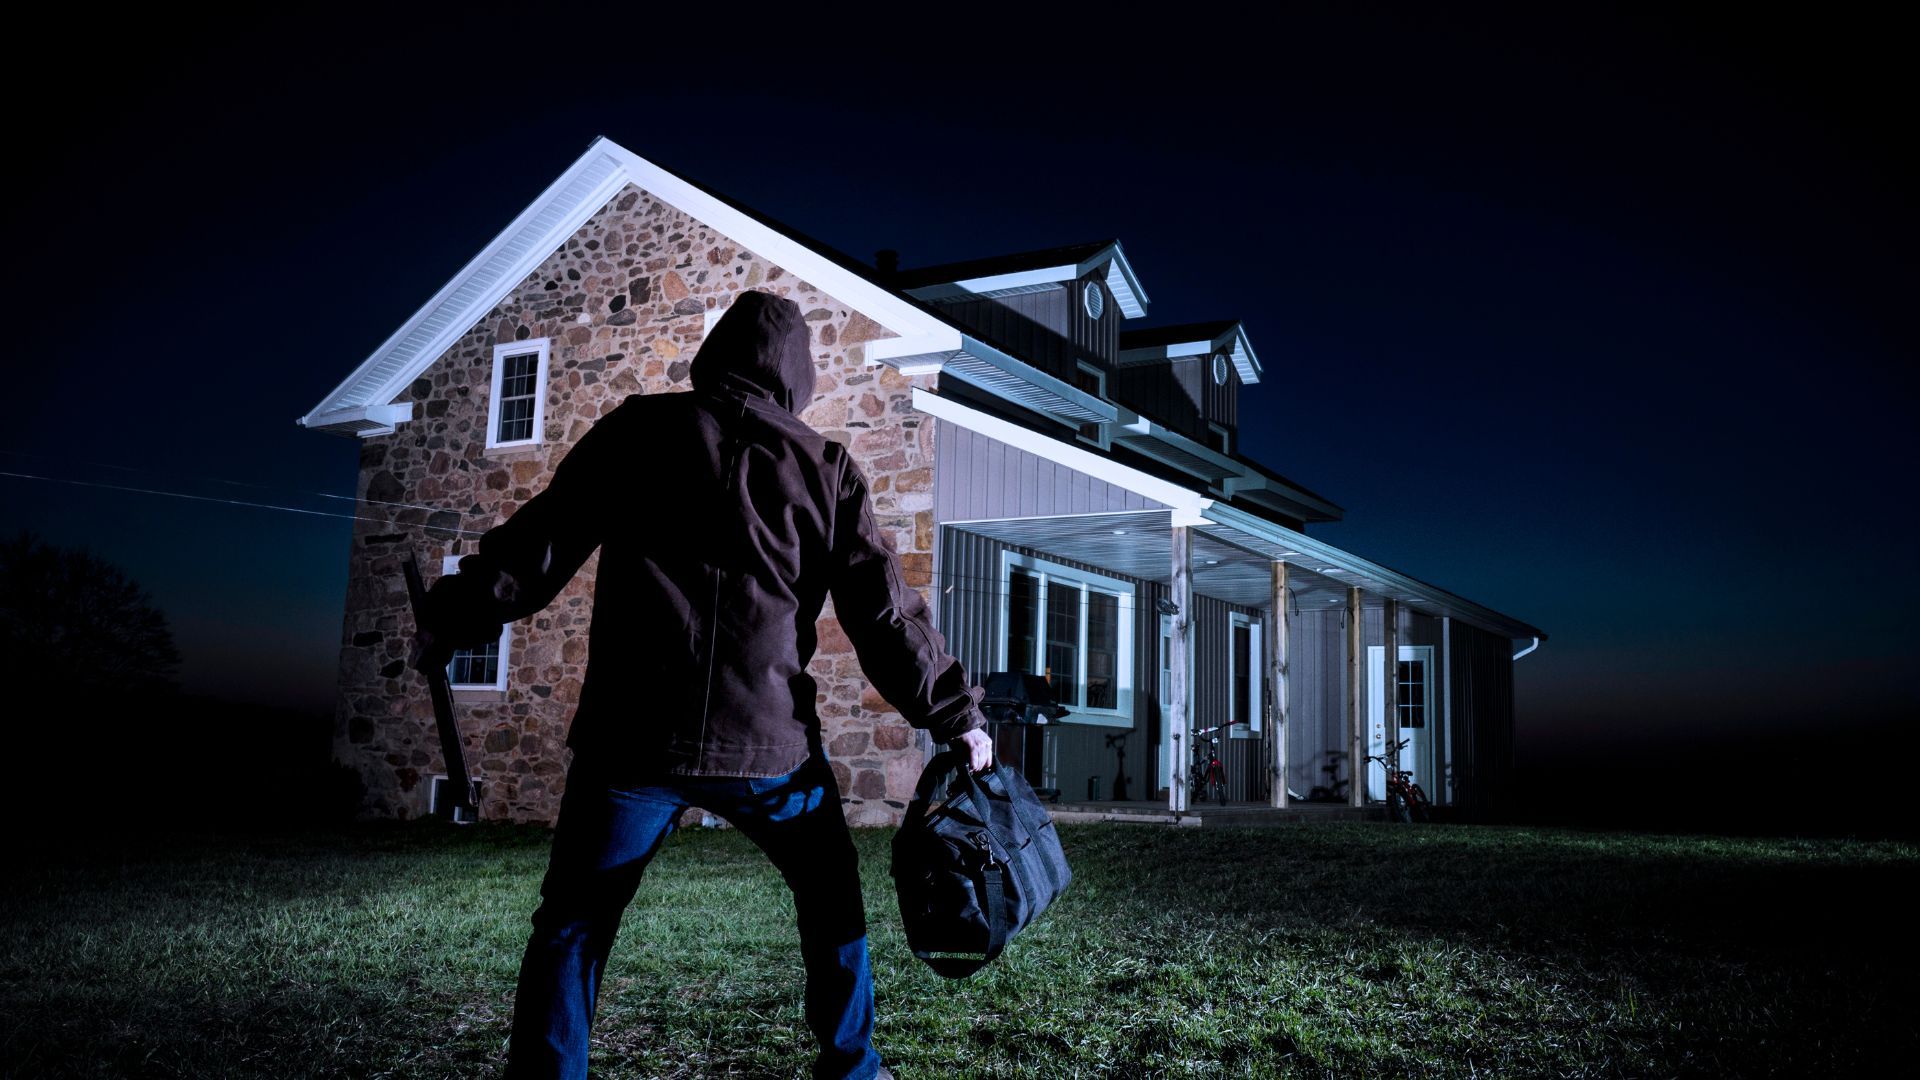 Burglar approaches house to test garage door security